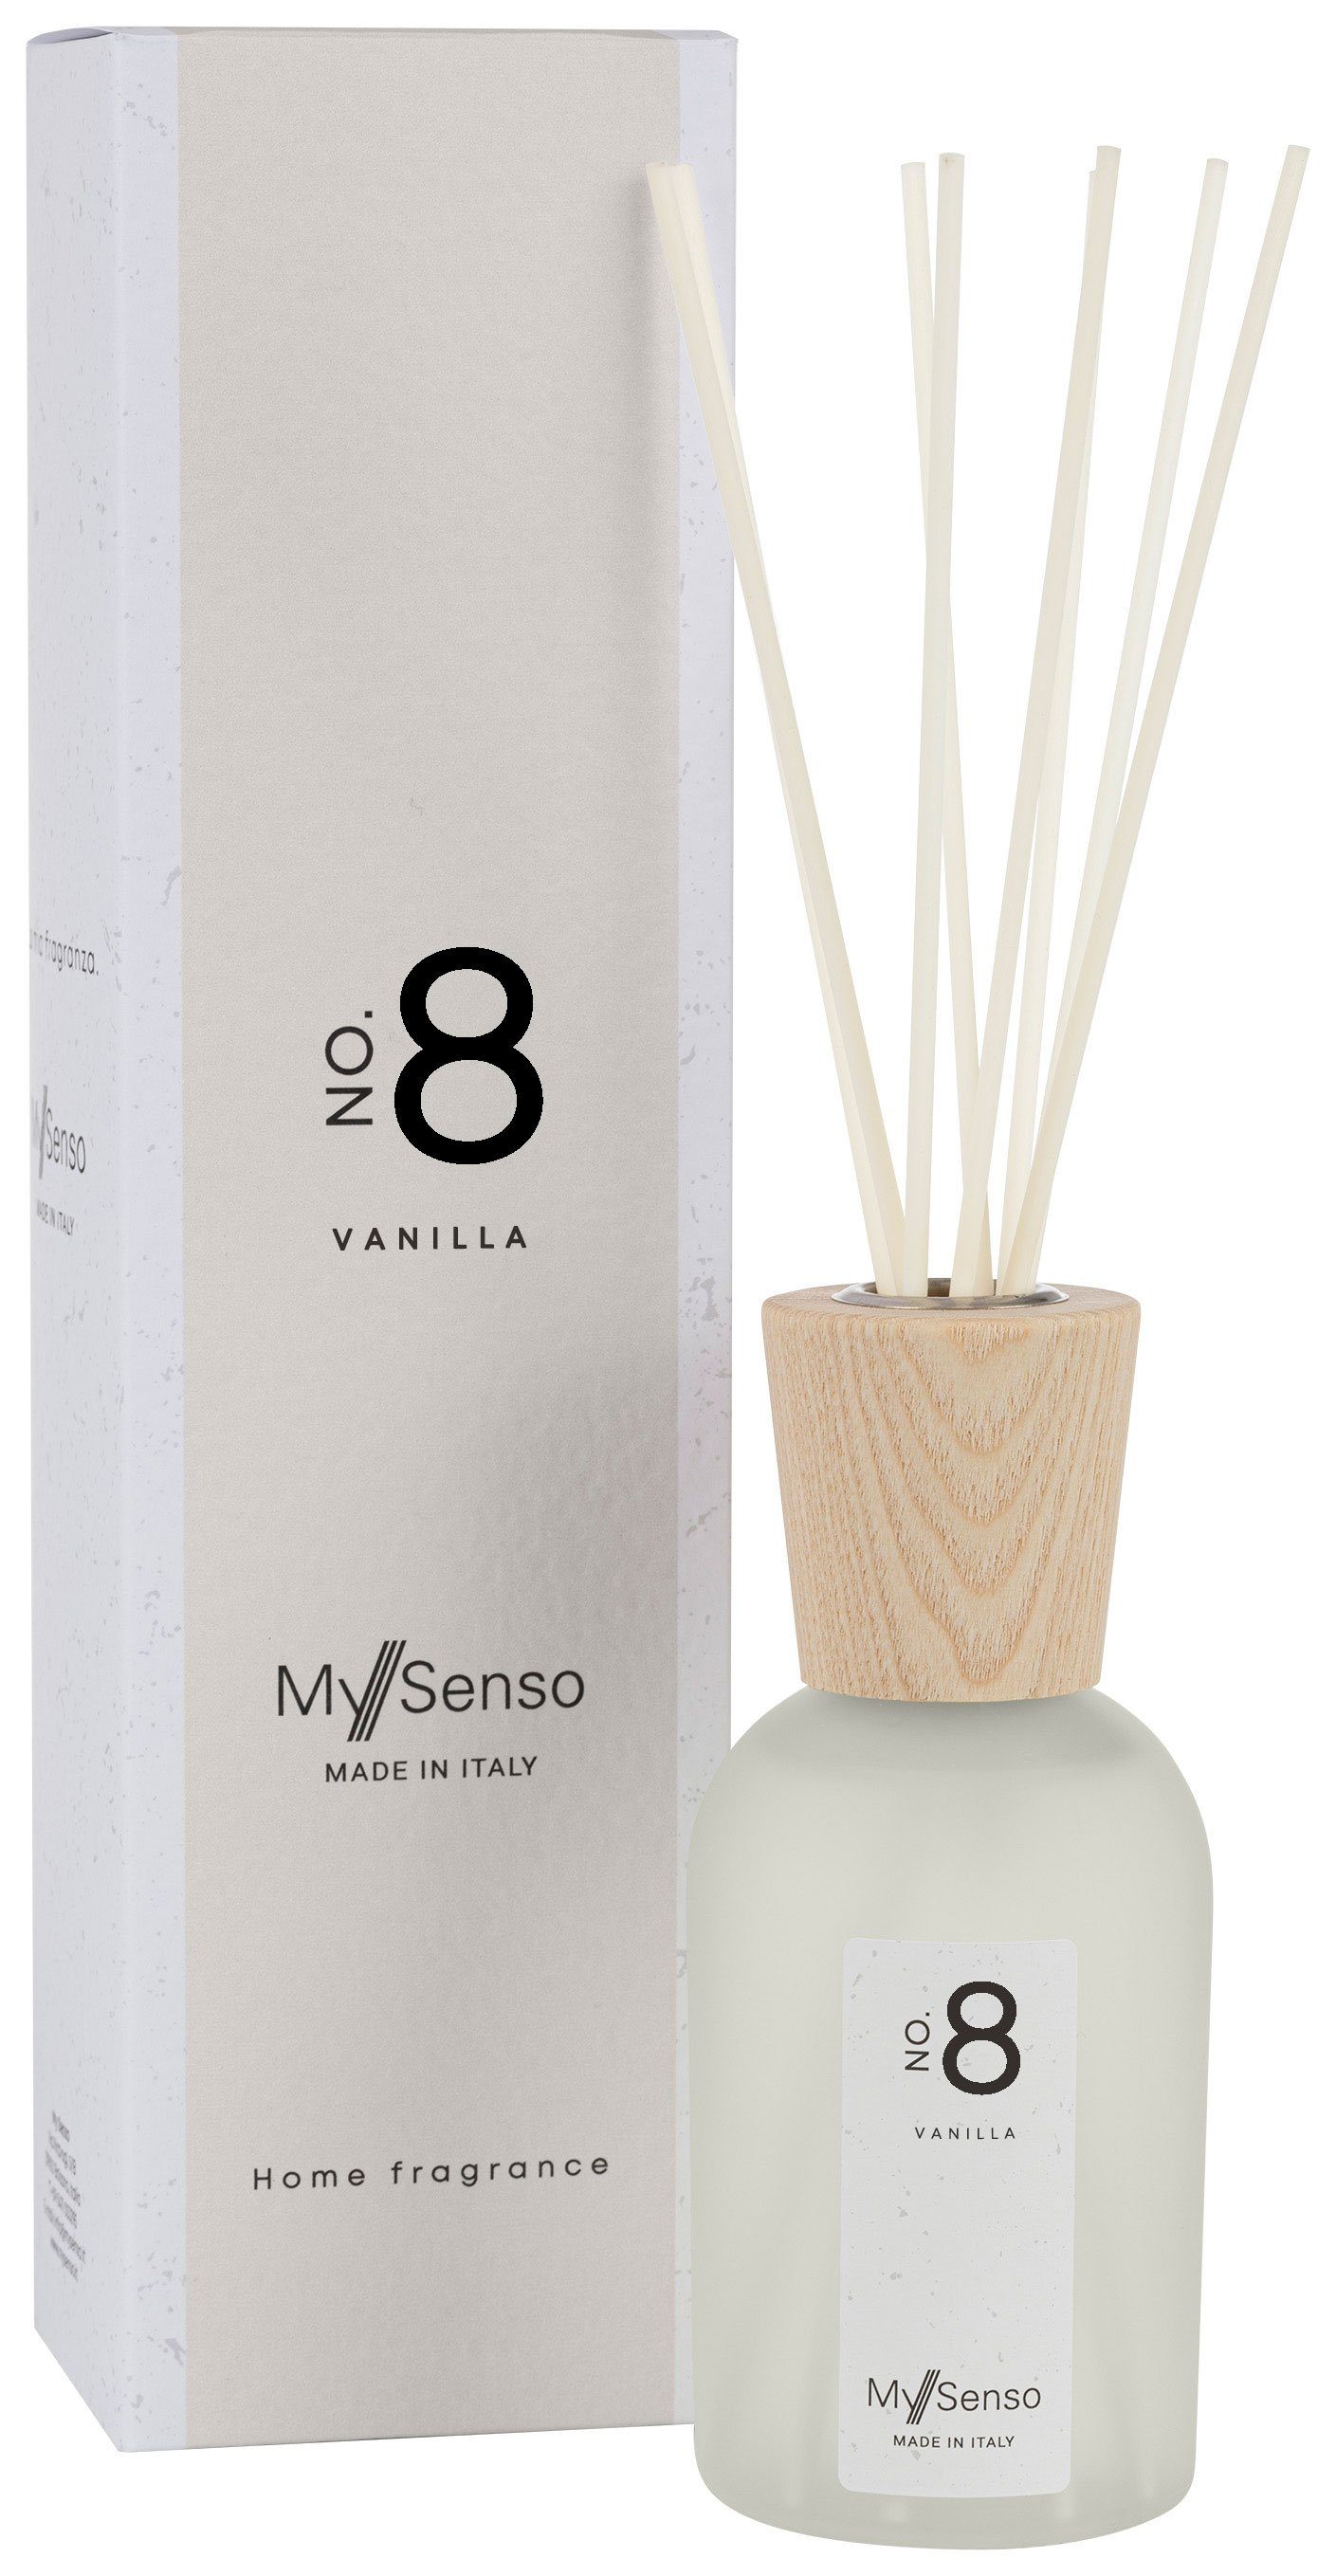 8 diffuser mysenso my senso 240ml Diffuser premium raumduft vanilla no MySenso